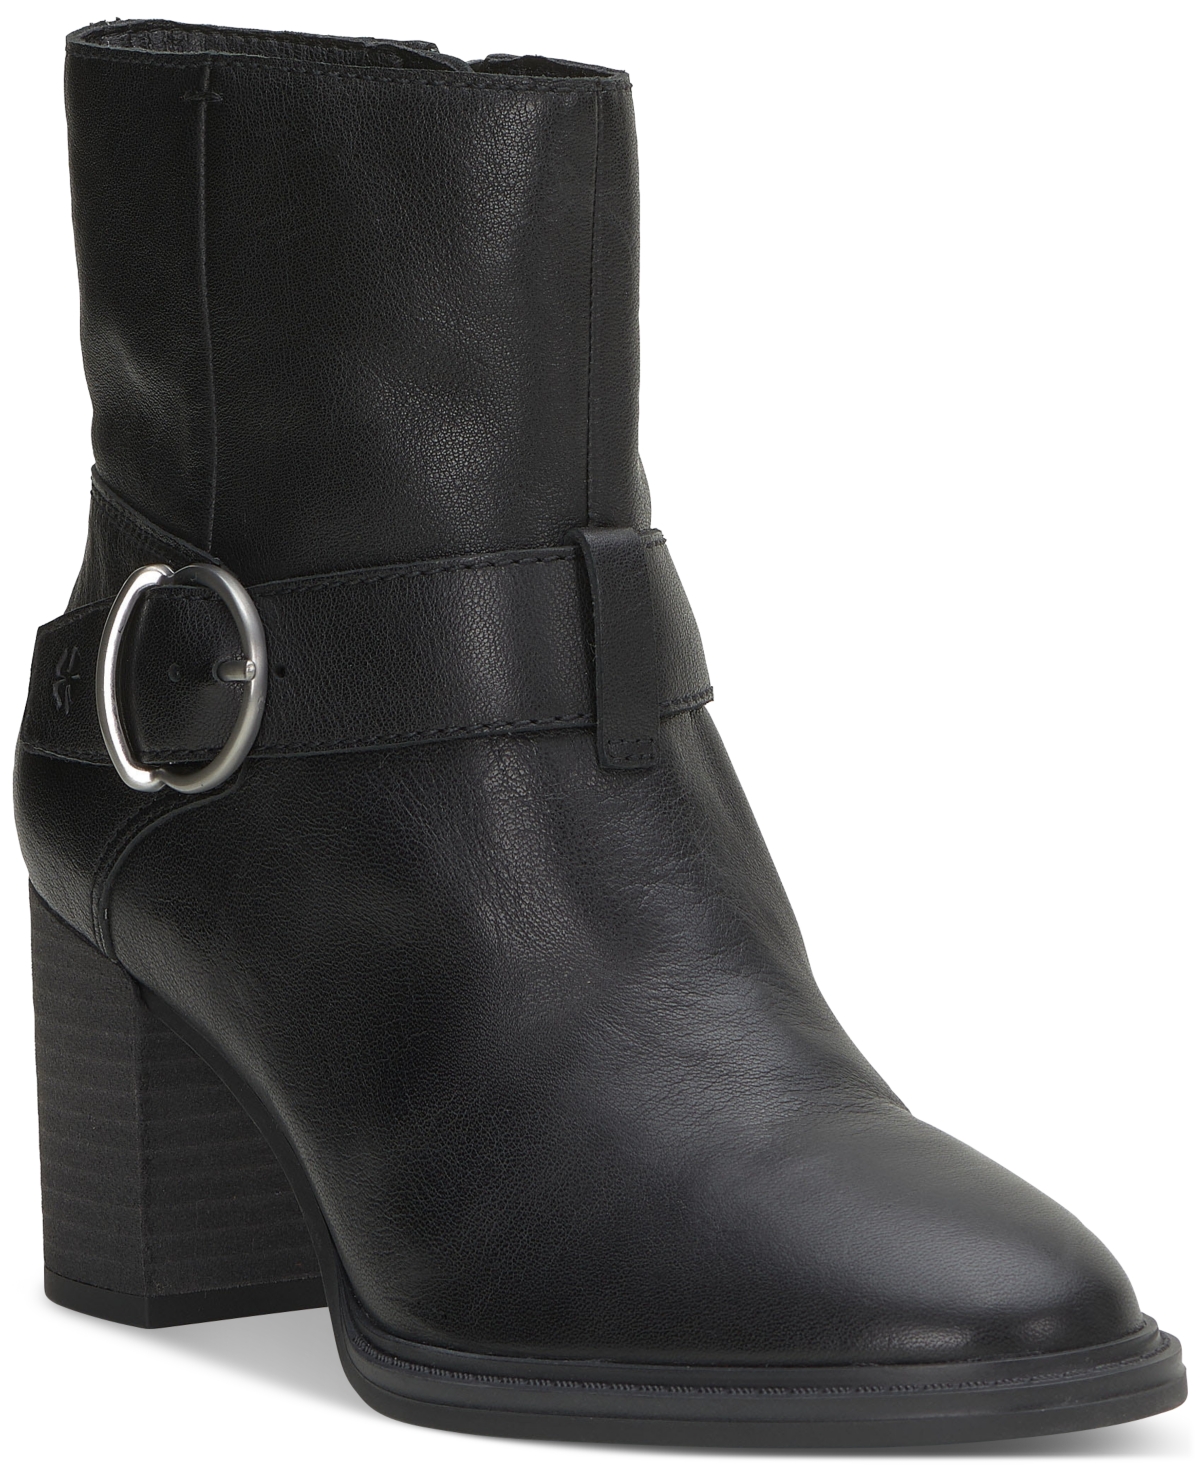 Women's Achelle Buckled Block-Heel Booties - Burnt Olive Leather